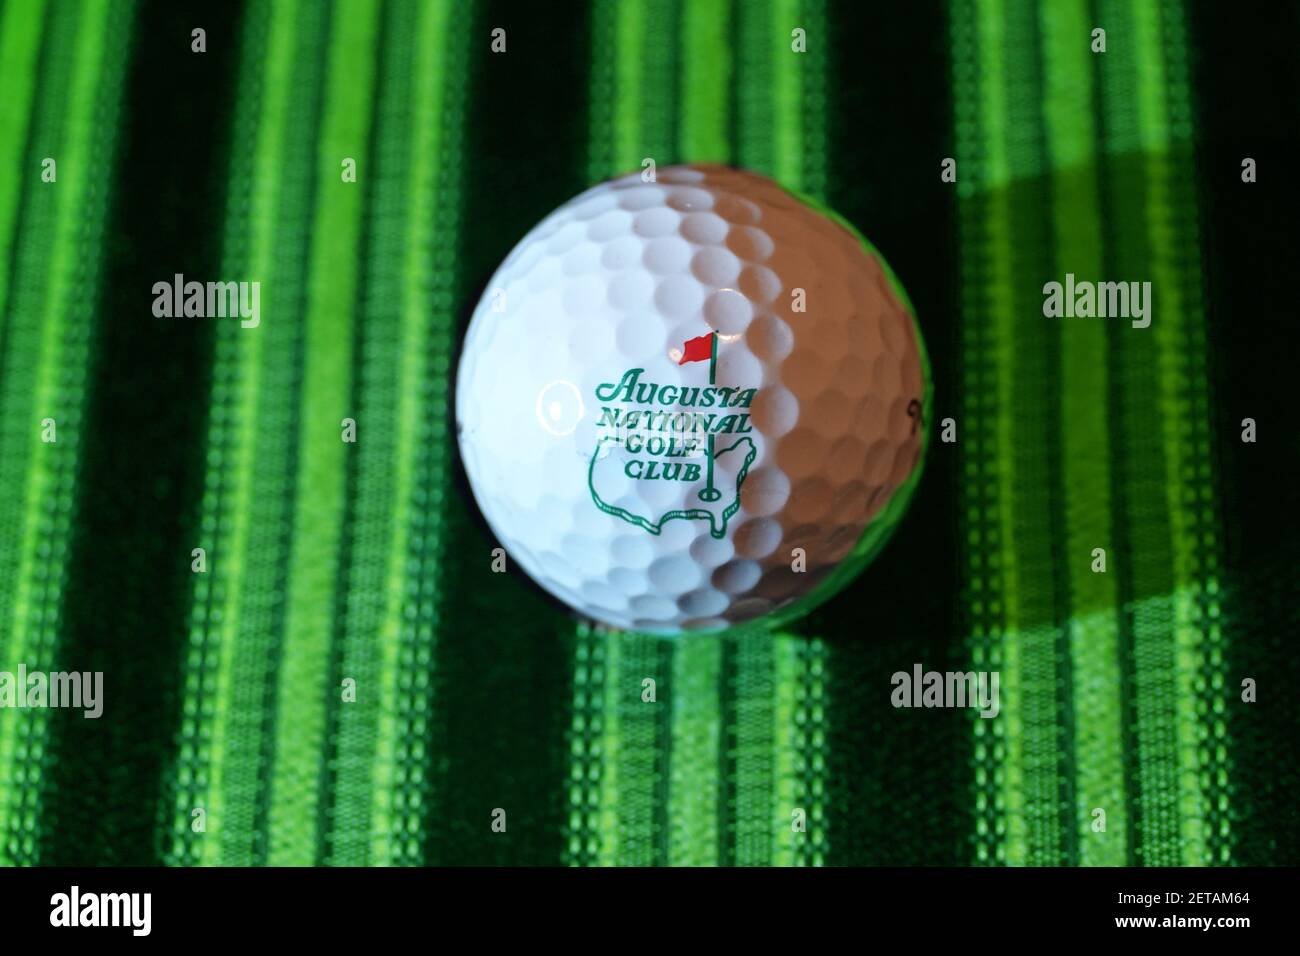 Imagen gráfica de la Augusta NATIONAL Golf Club logotipo de la pelota de golf - el hogar del Masters evento de golf celebrado en abril de cada año. Foto de stock